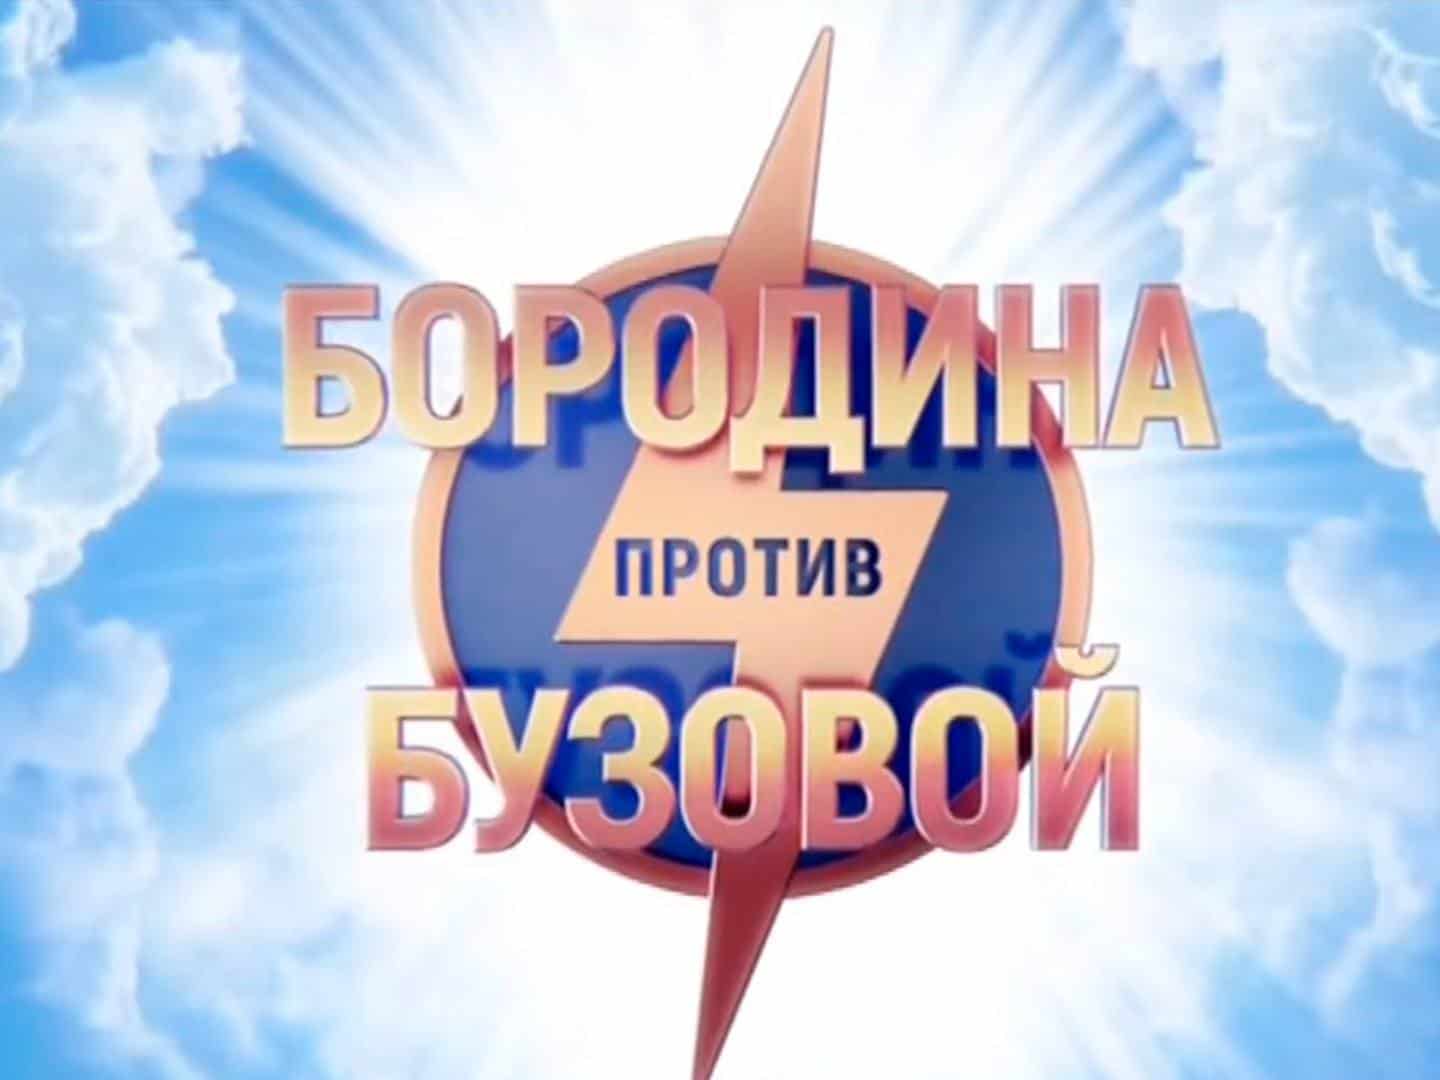 Бородина-против-Бузовой-259-серия